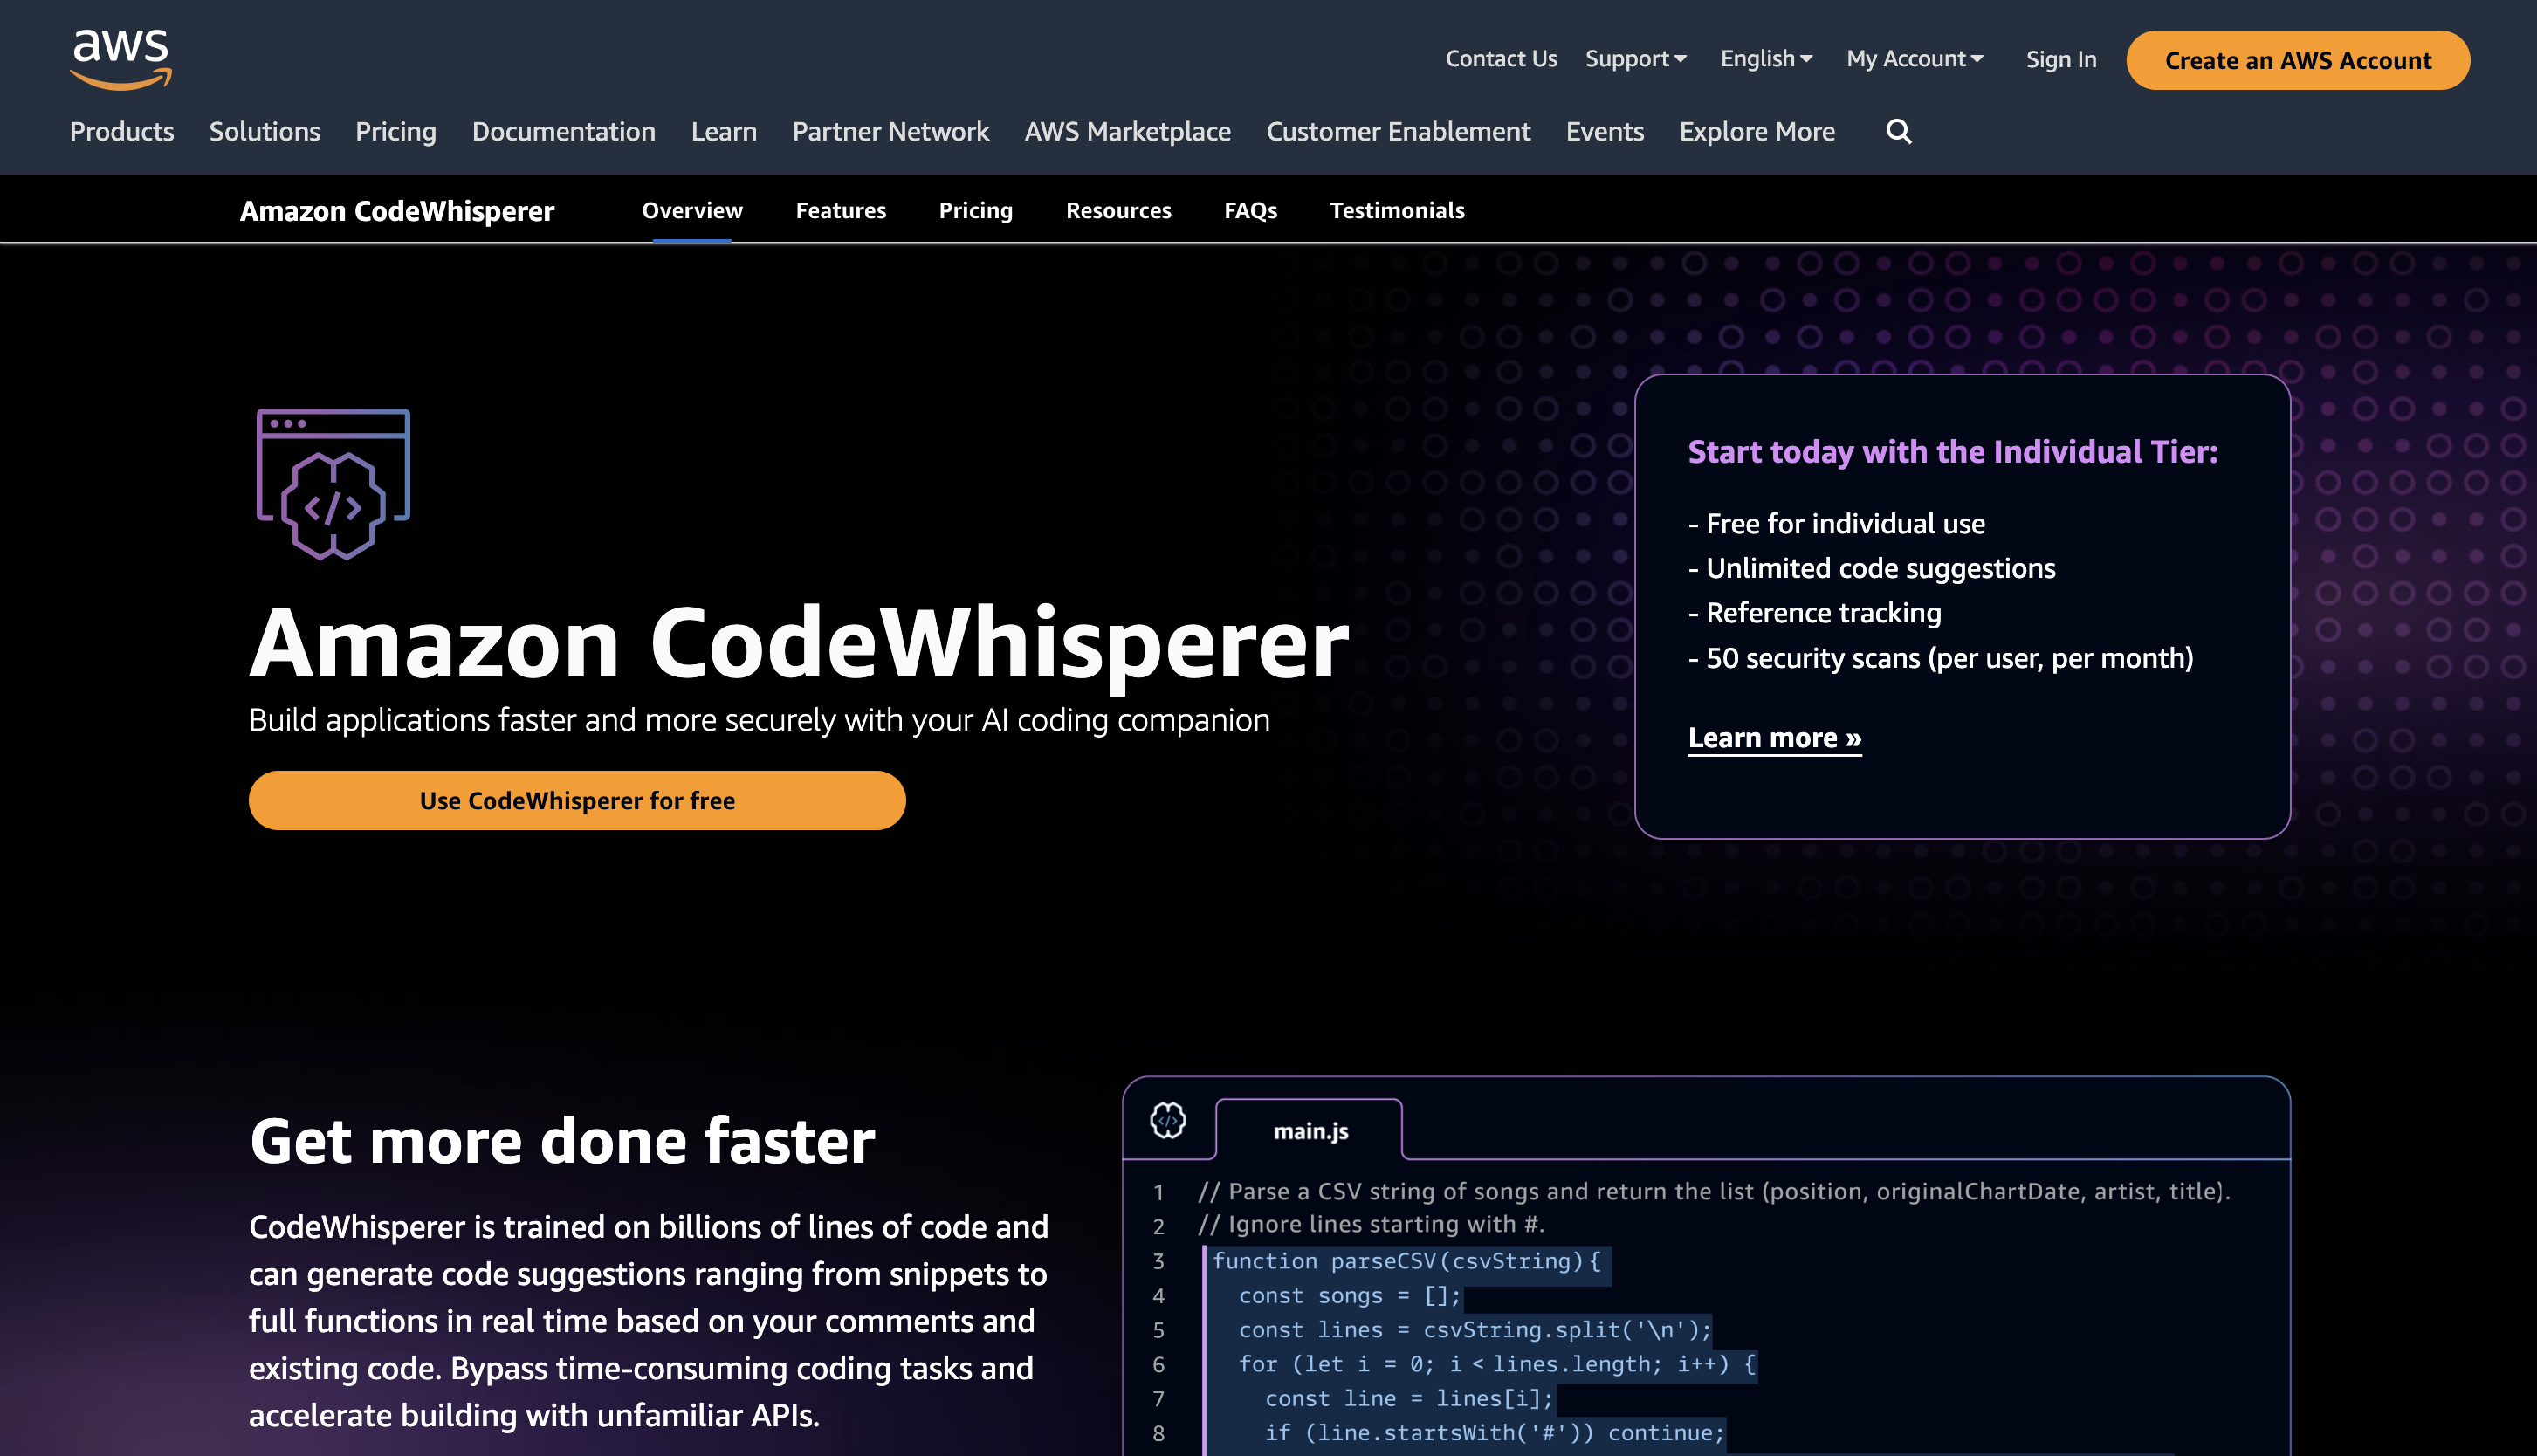 Amazon Code Whisperer